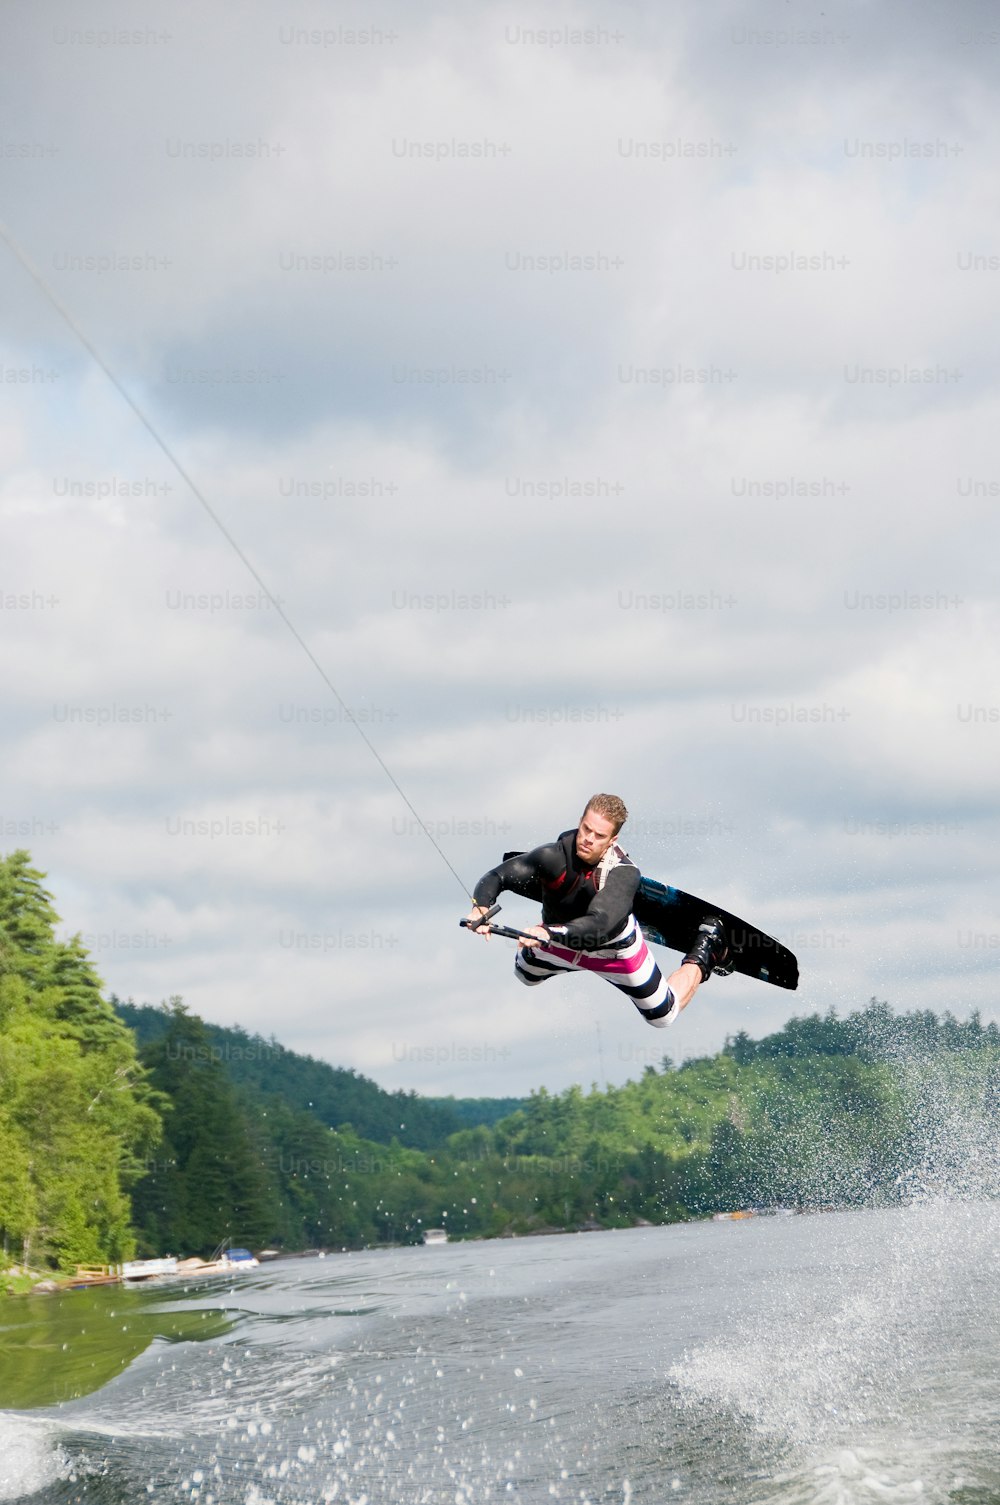 Un uomo che vola nell'aria mentre cavalca una tavola da kitesurf